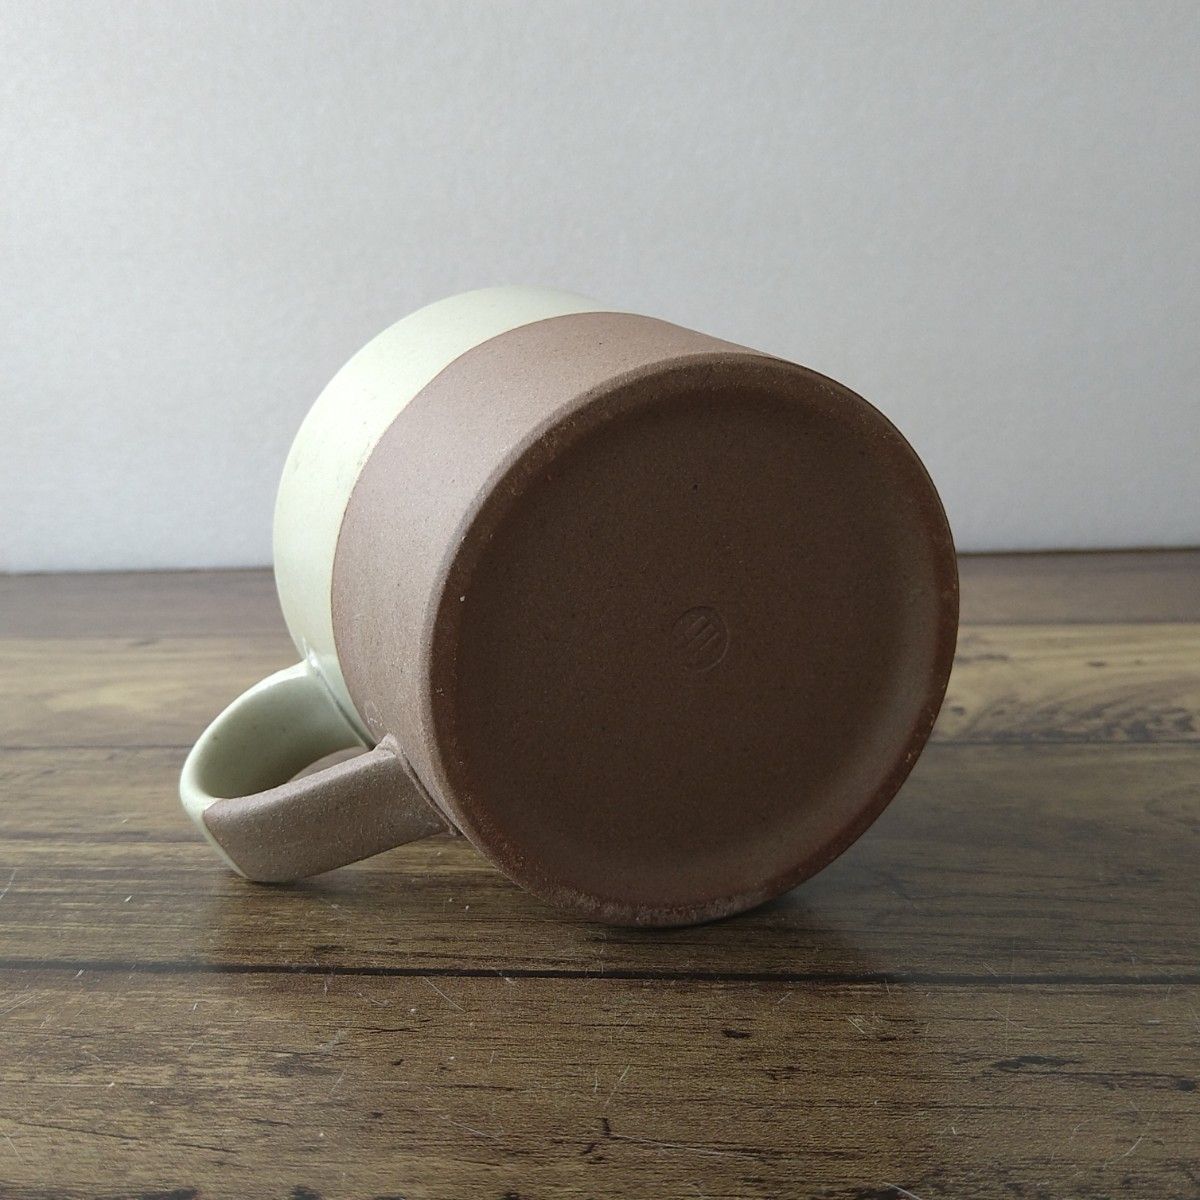 【2点】新品 日本製 美濃焼 美濃文山窯 シンプル マグカップ ホワイト グレー